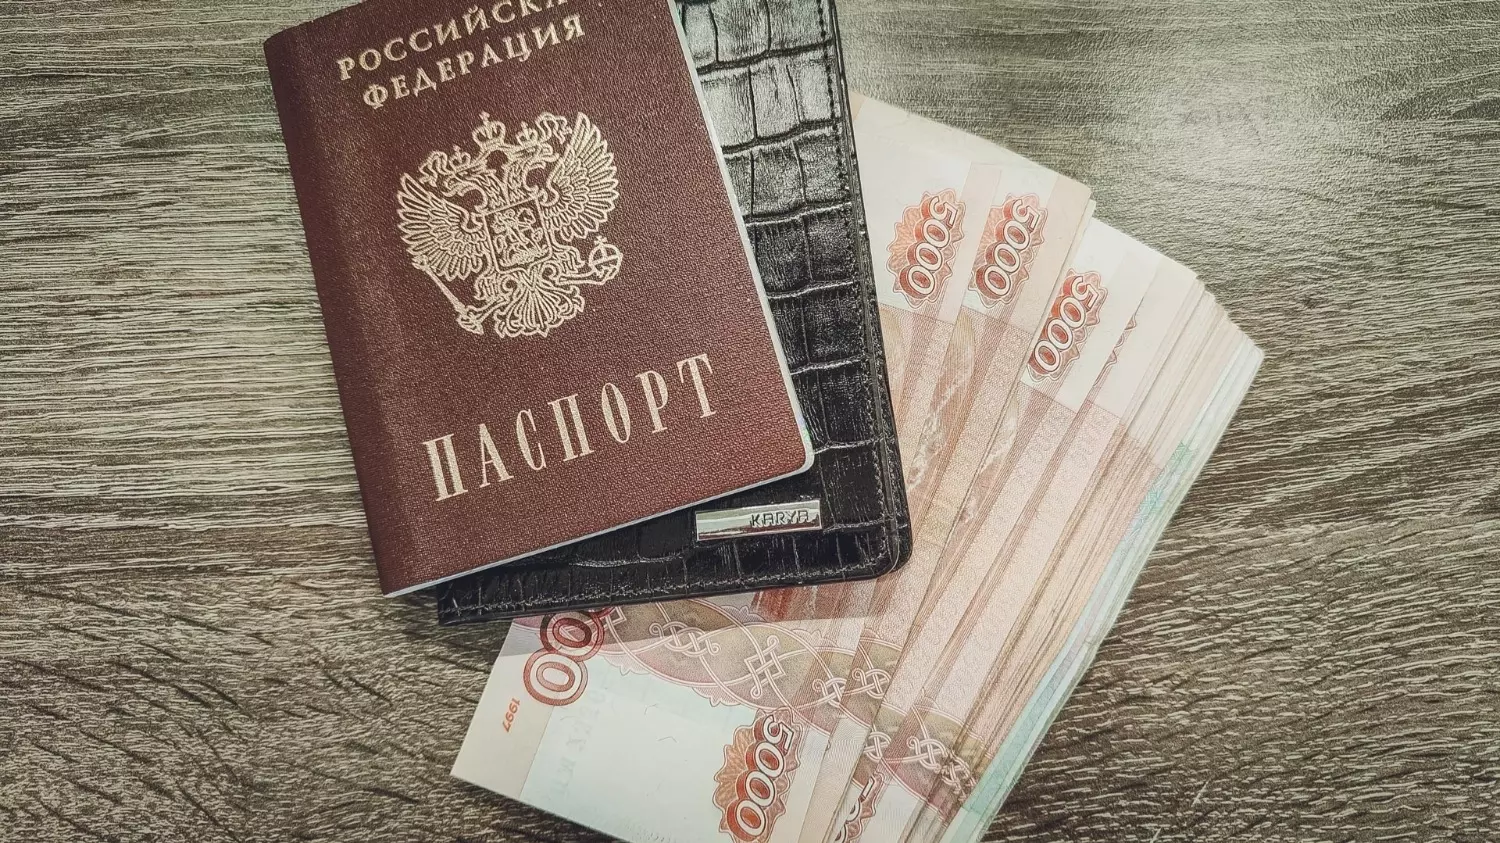 Краткосрочная шенгенская виза Болгарии обойдется более чем в 100 евро.